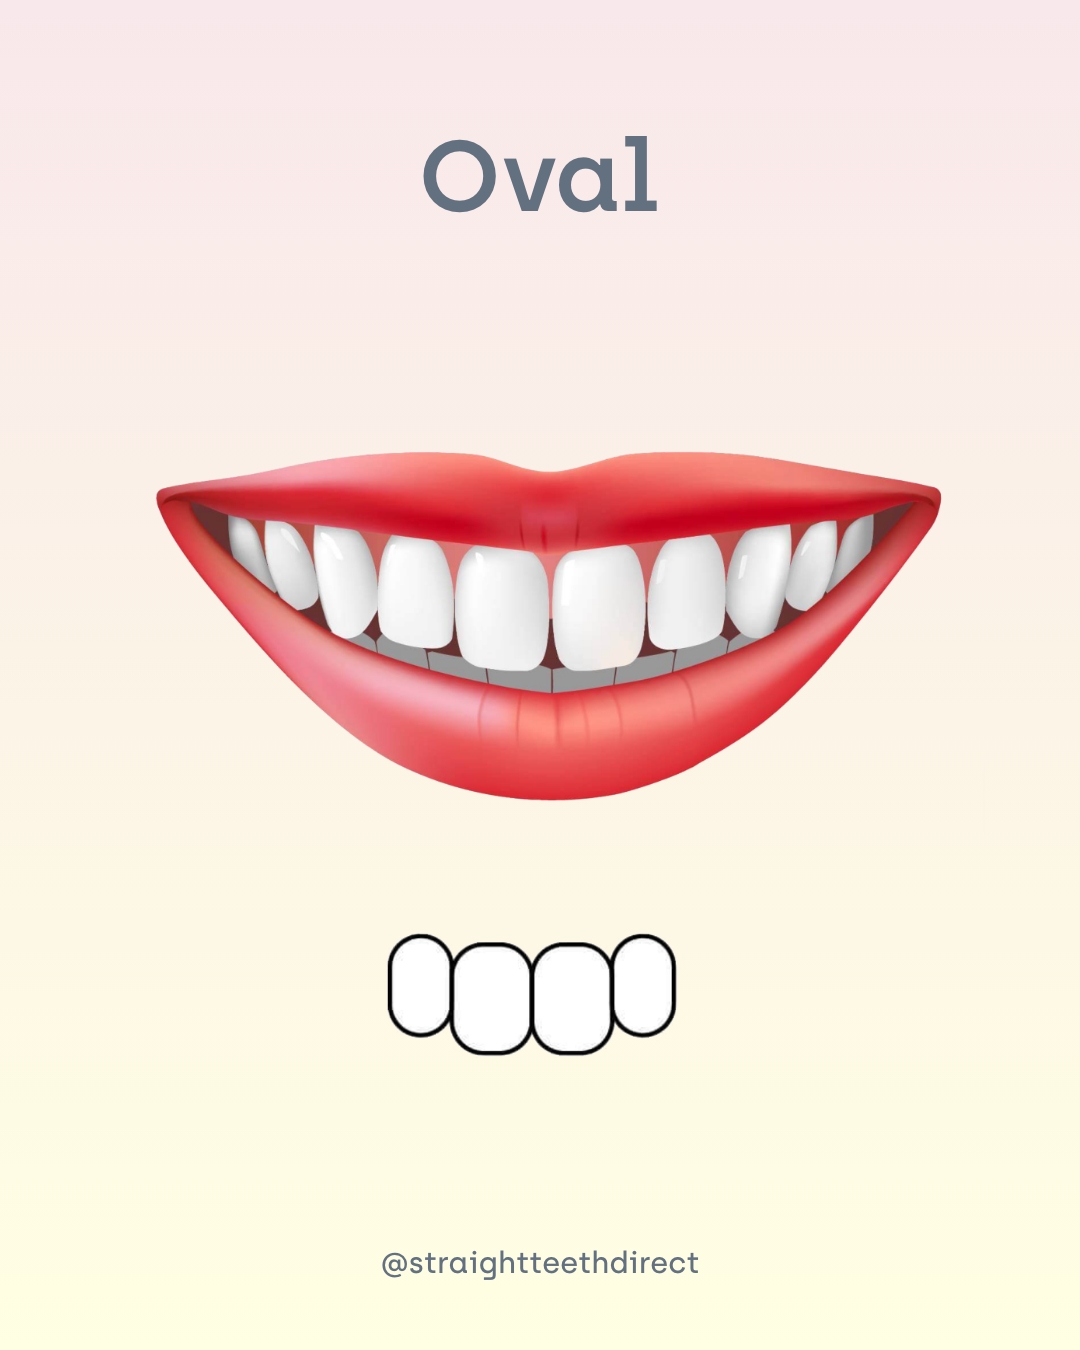 Oval tooth shape